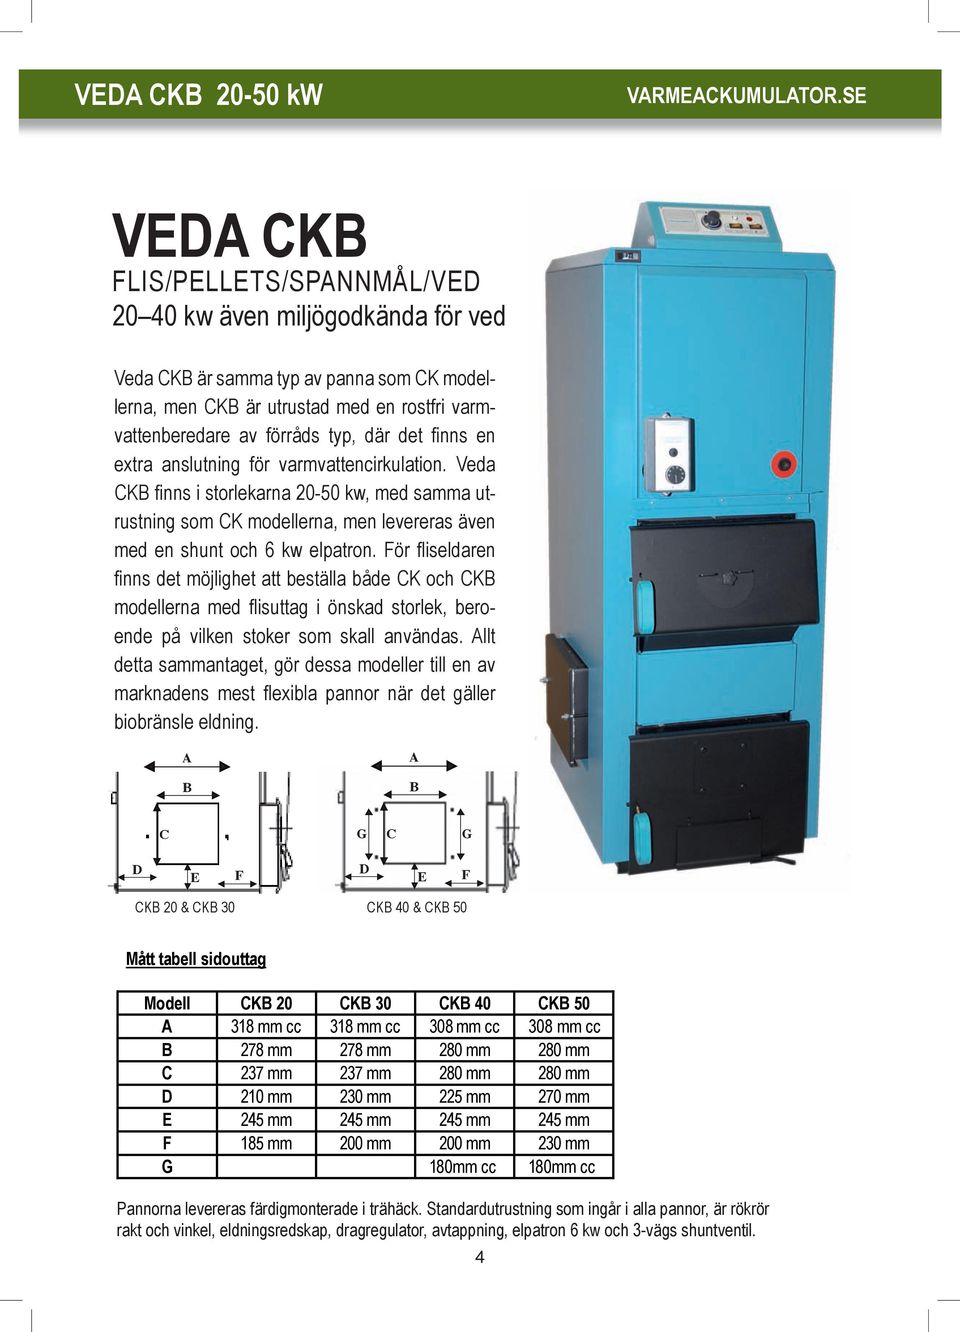 Veda CKB finns i storlekarna 20-50 kw, med samma utrustning som CK modellerna, men levereras även med en shunt och 6 kw elpatron.